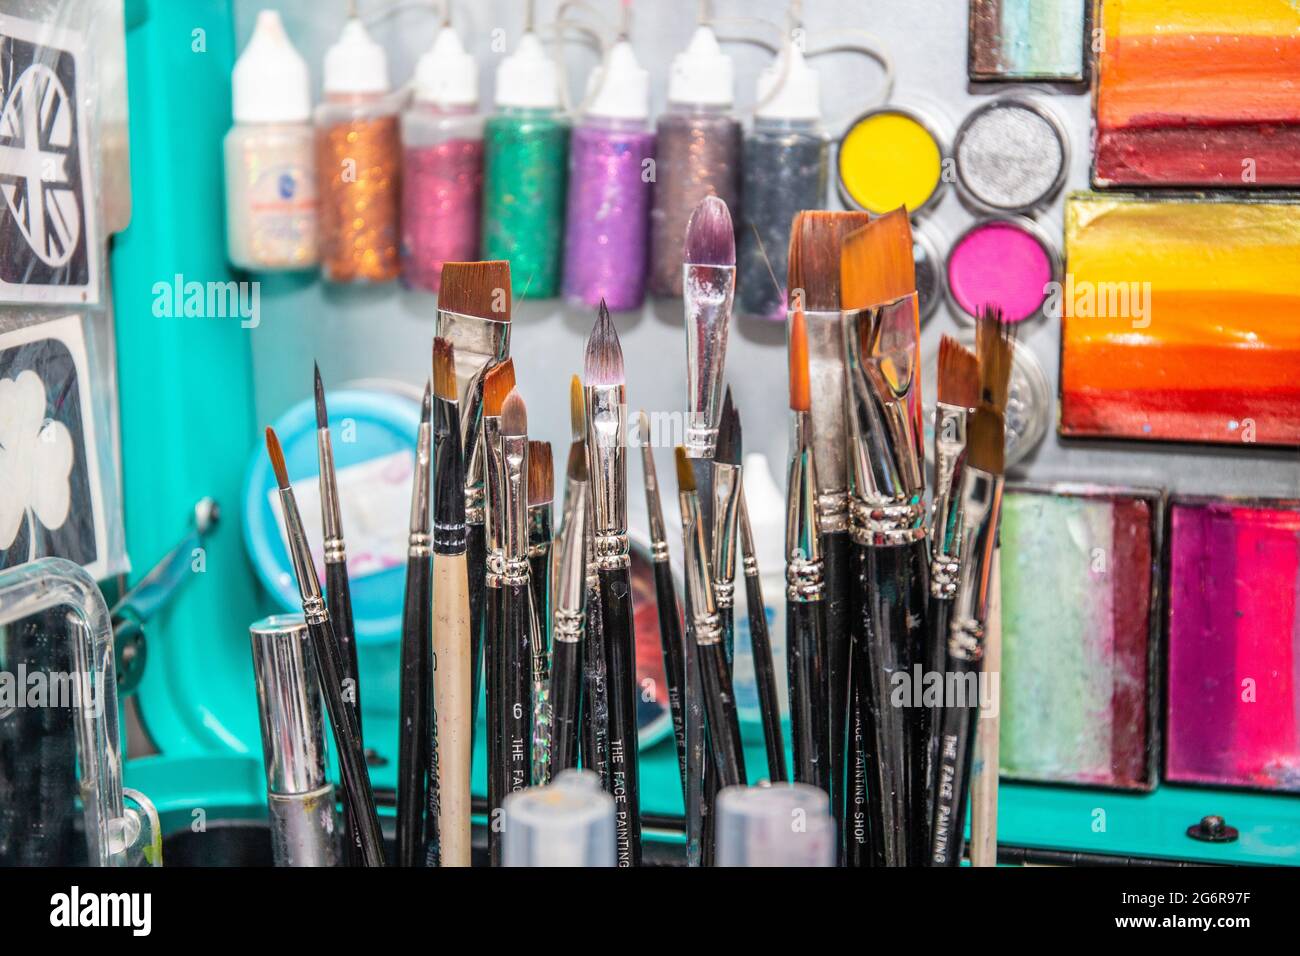 Nahaufnahme von Farben, Schablonen, Bürsten und anderen Geräten, die für die Gesichtsmalerei verwendet werden. Stockfoto